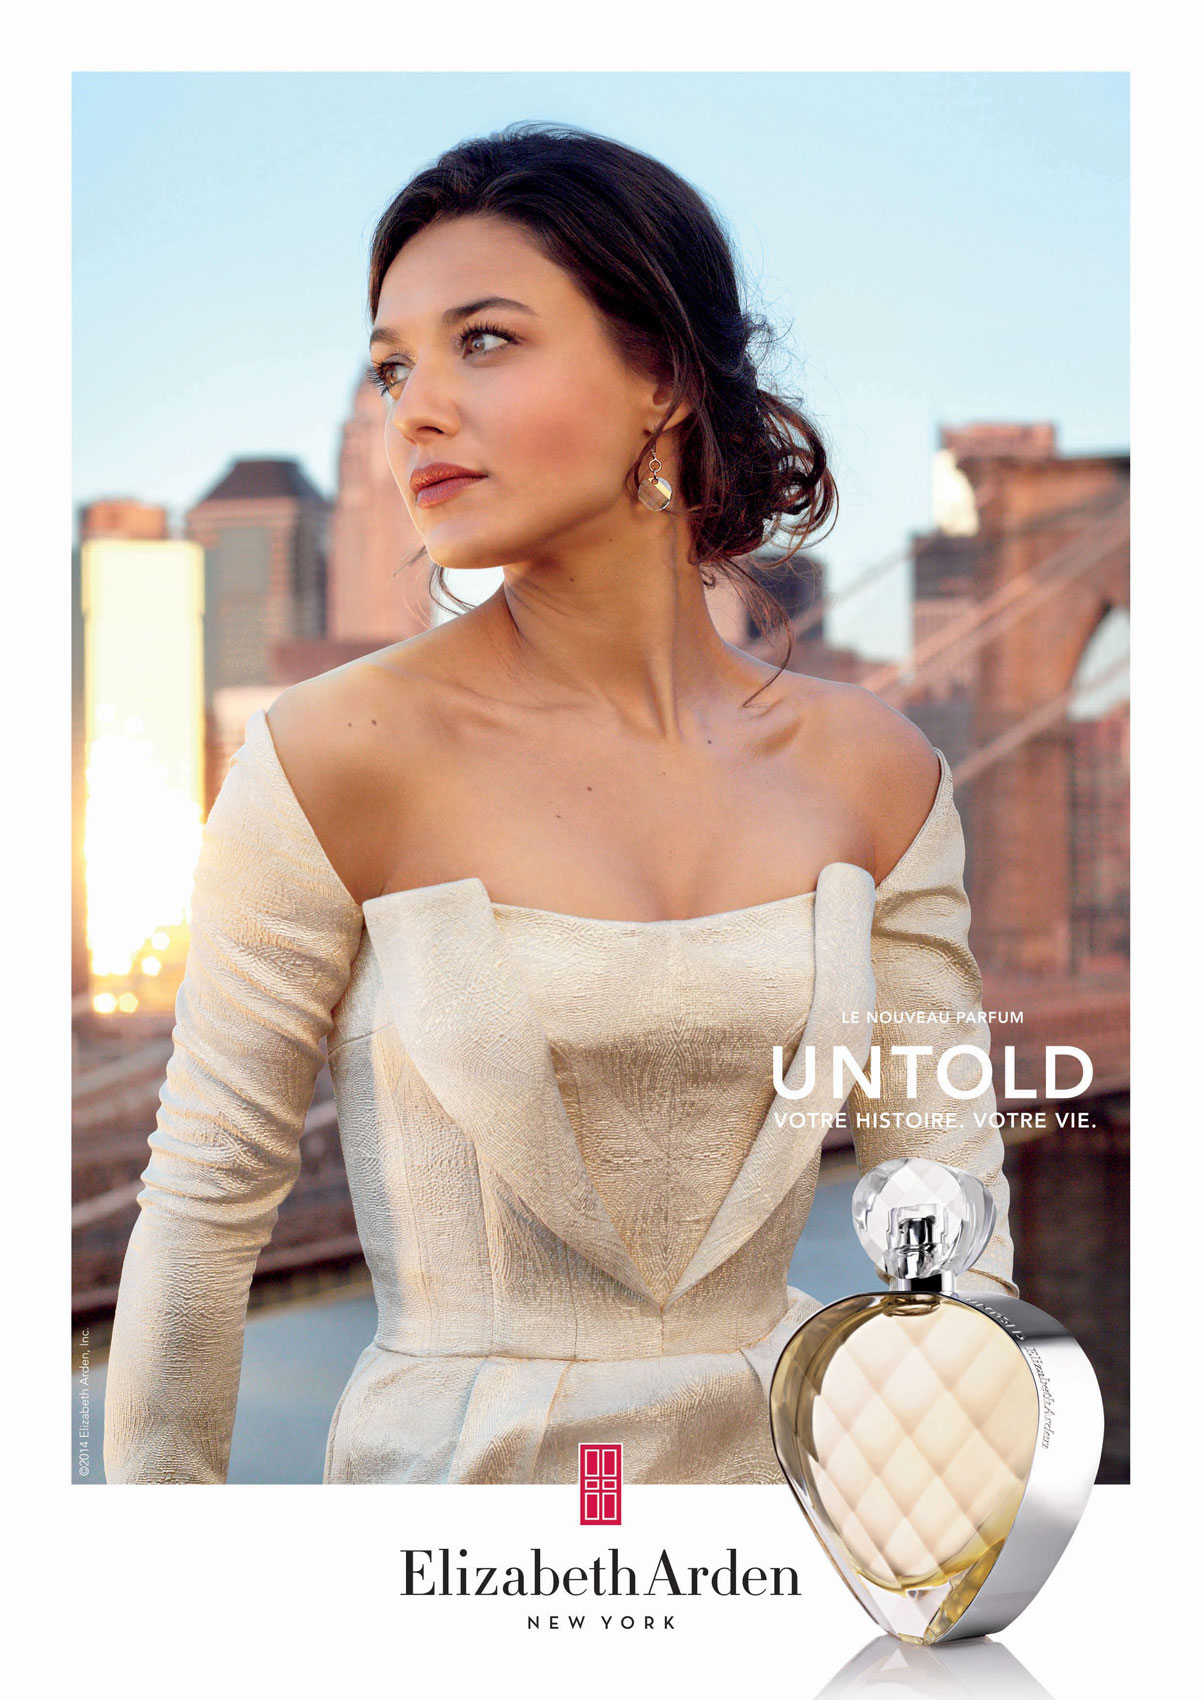 Elizabeth Arden Untold perfume ad